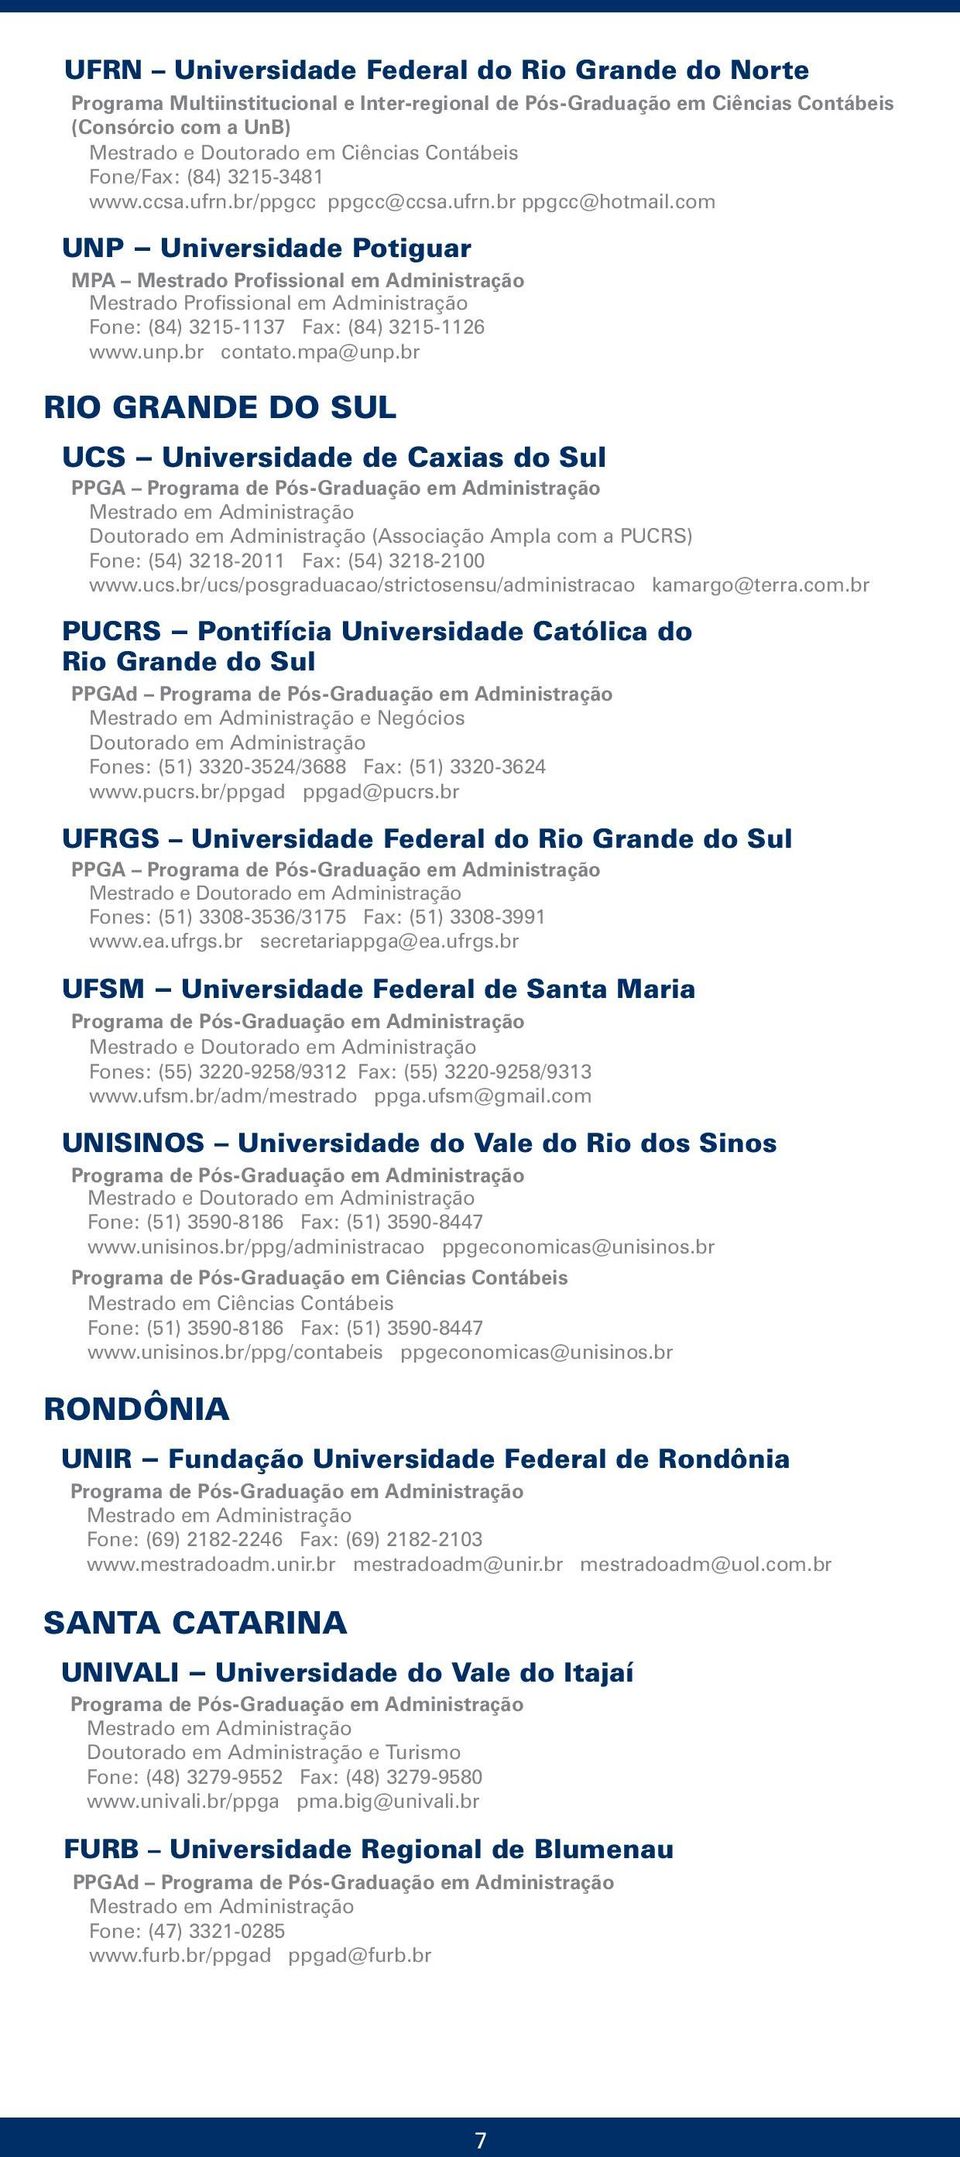 br RIO GRANDE DO SUL UCS Universidade de Caxias do Sul PPGA Doutorado em Administração (Associação Ampla com a PUCRS) Fone: (54) 3218-2011 Fax: (54) 3218-2100 www.ucs.